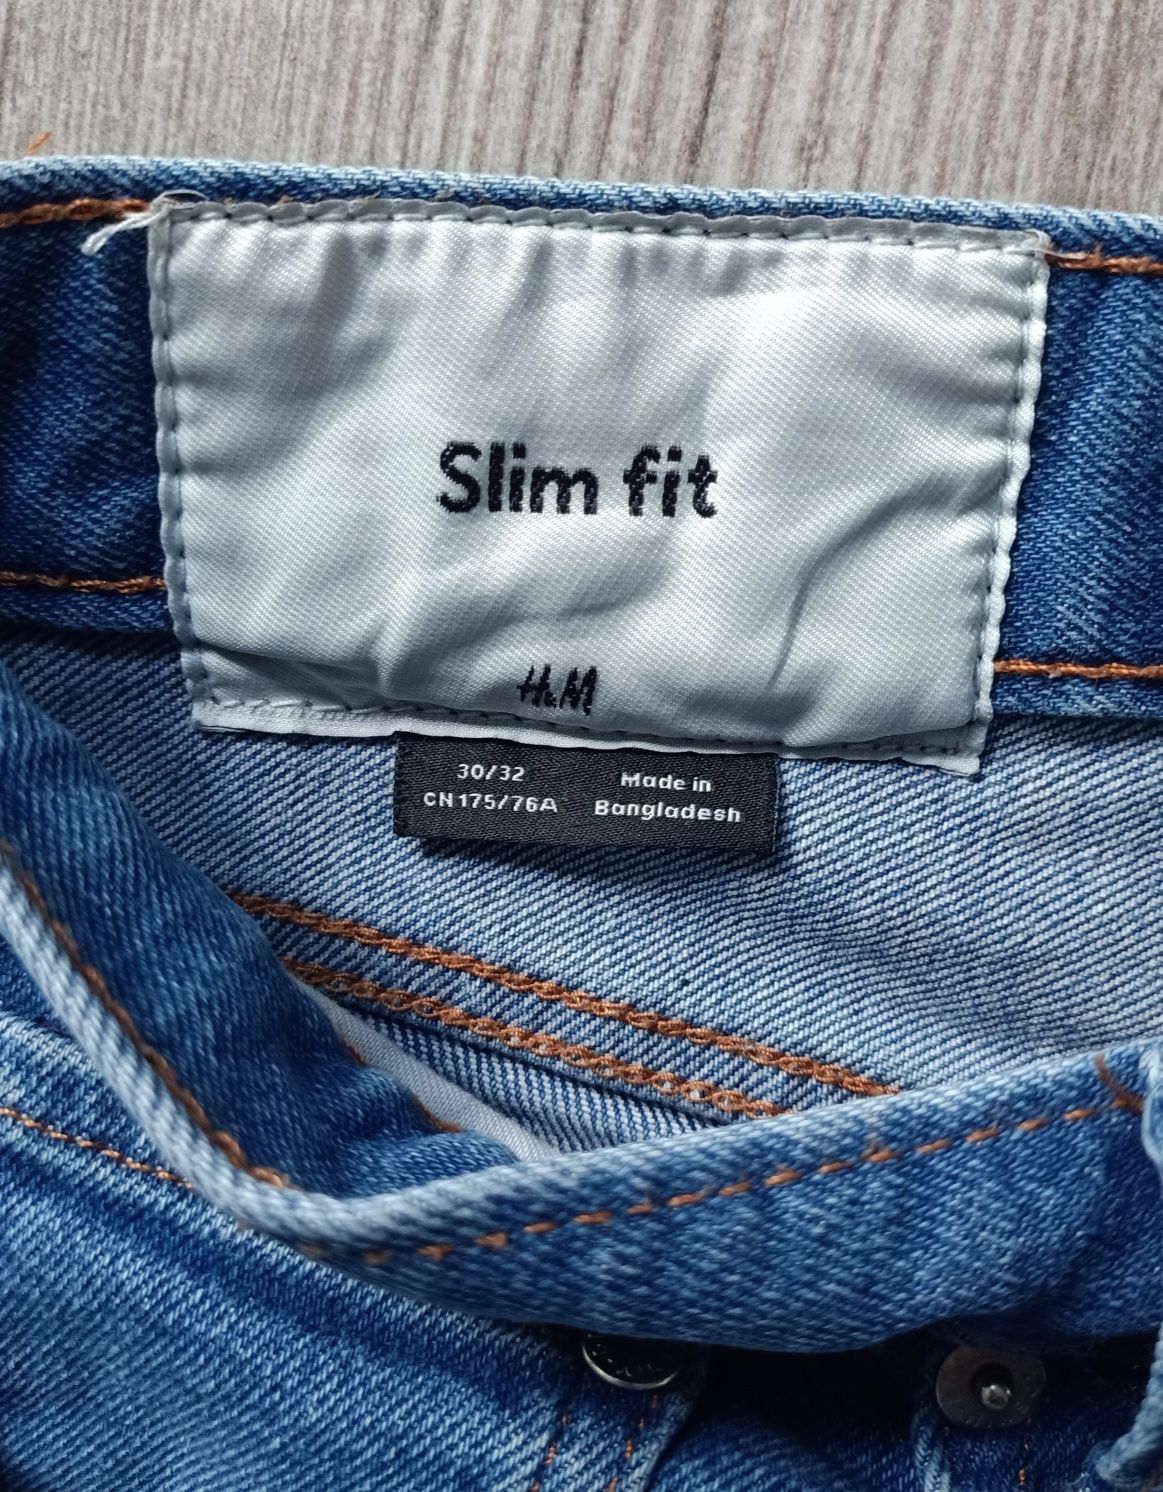 Zestaw spodnie jeansowe i materiałowe na lato, h&m rozmiar M